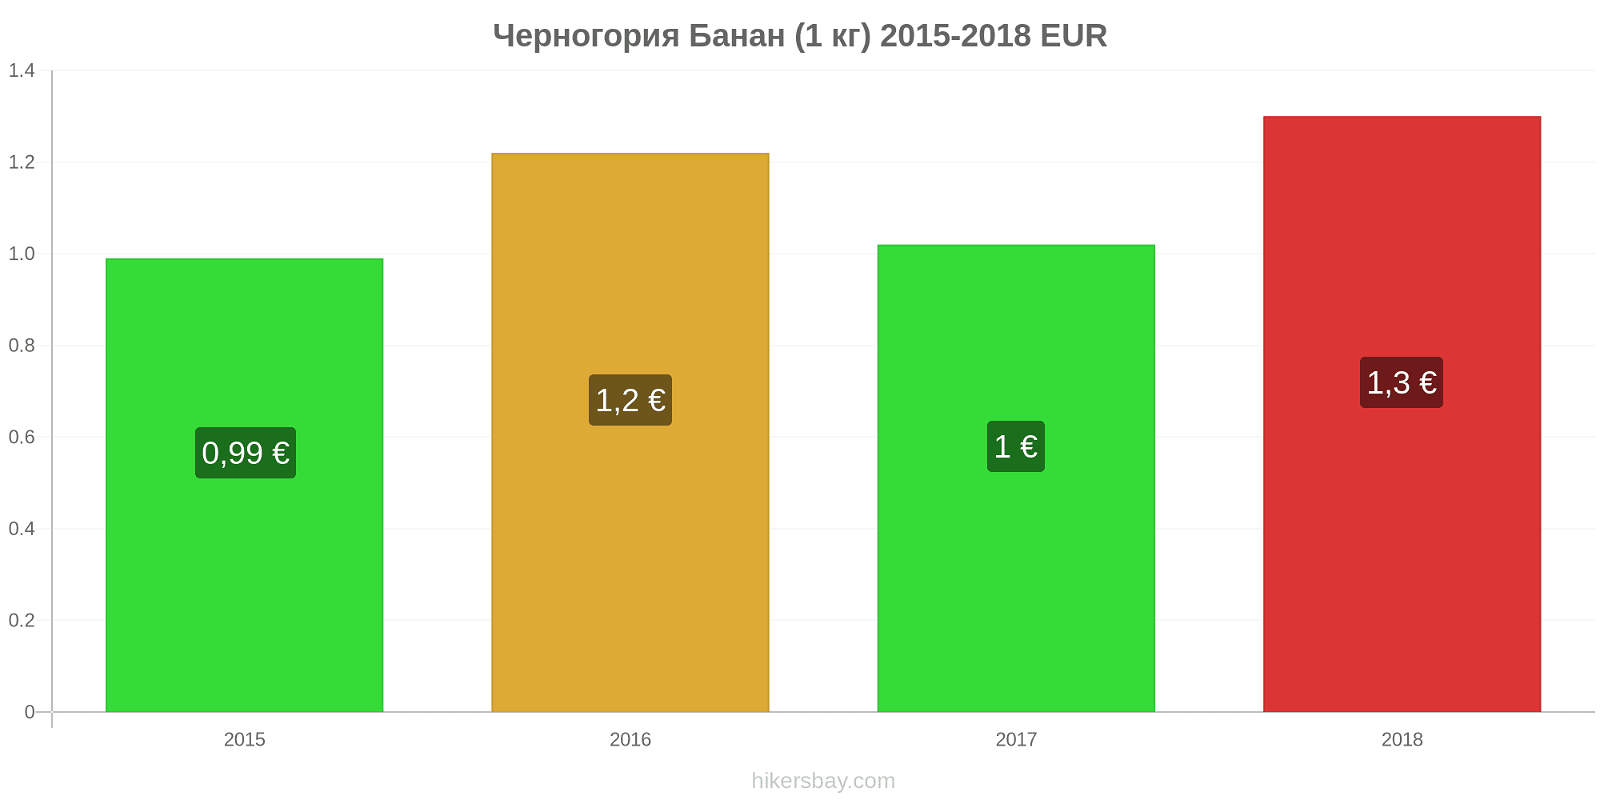 Черногория изменения цен Бананы (1 кг) hikersbay.com